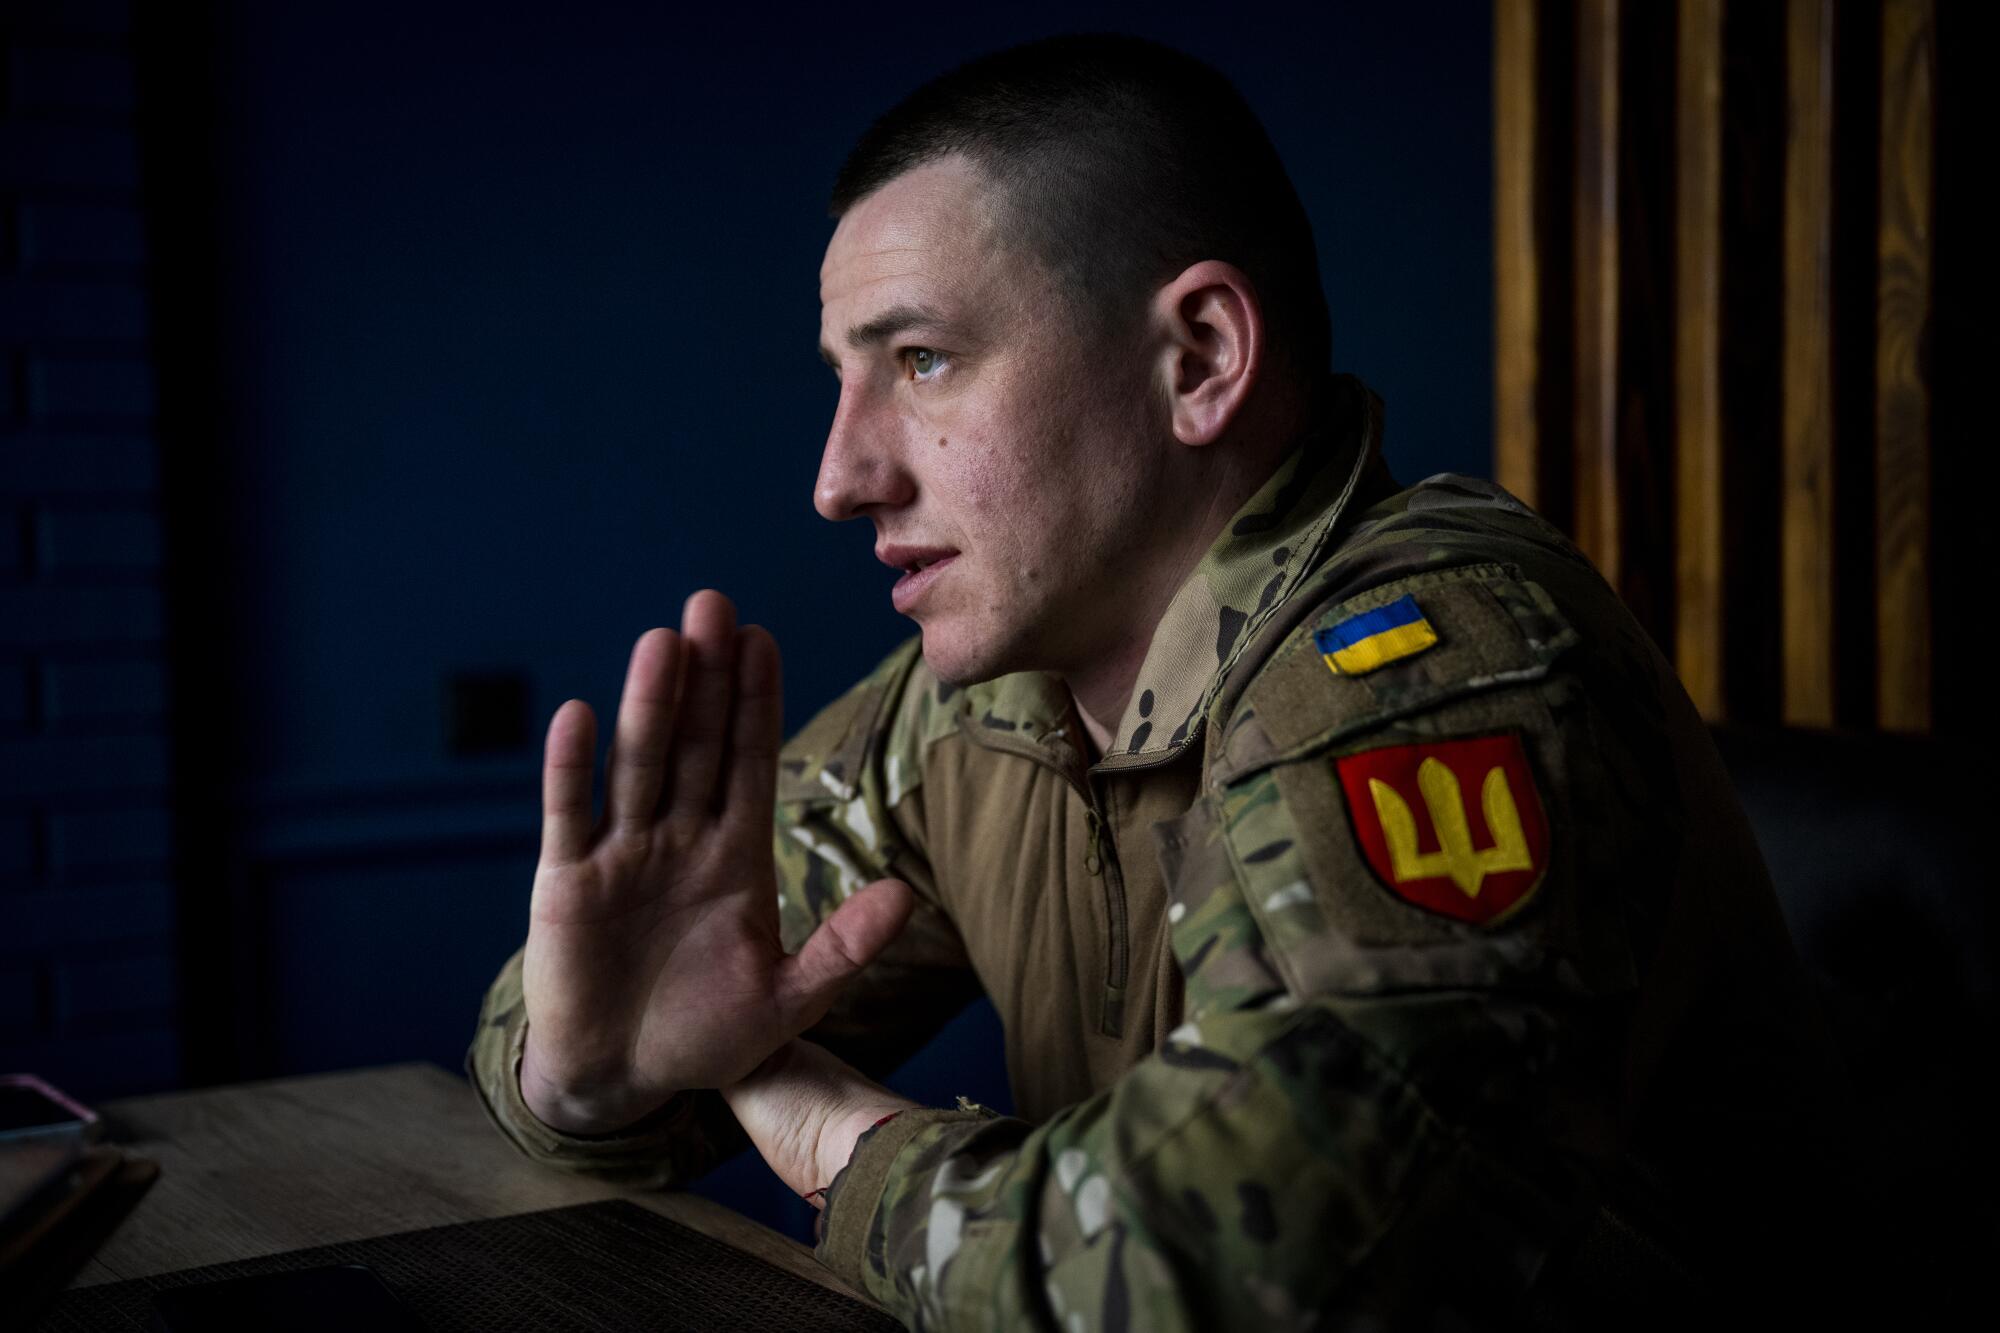 A Ukrainian soldier in uniform raises one hand as he speaks.  